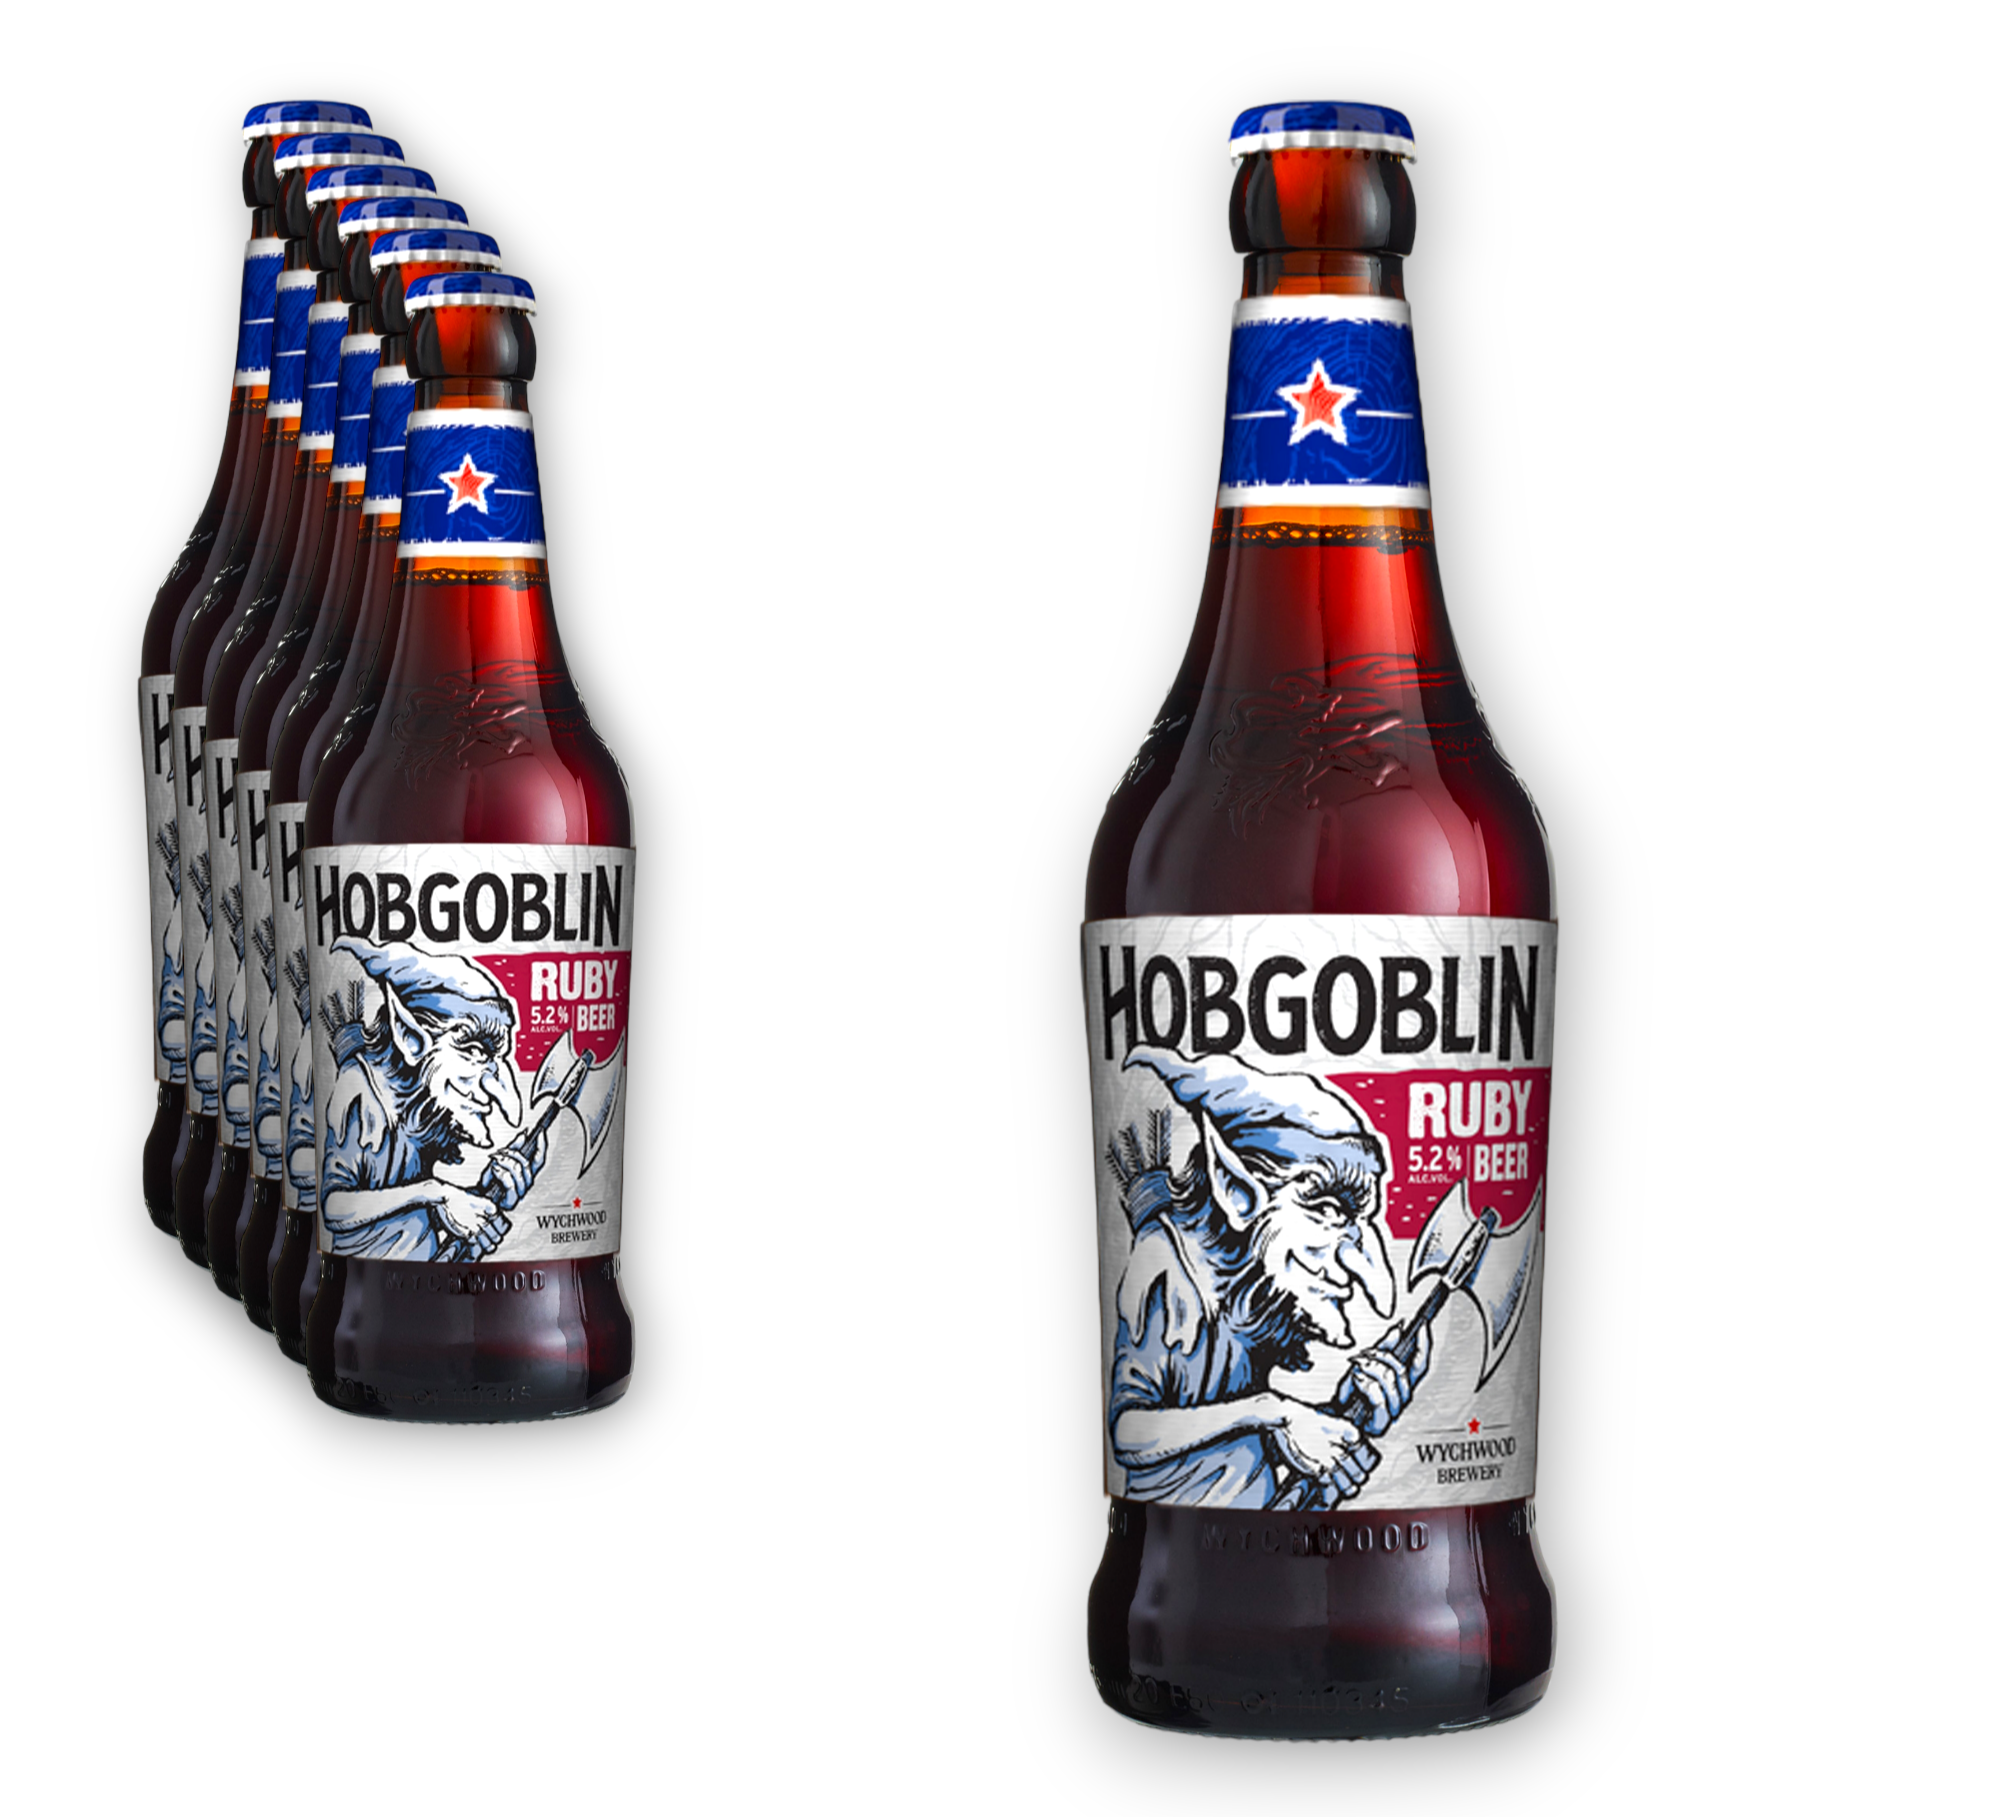 Wychwood Hobgoblin Ruby Beer 0,5l- Das legendäre Bier der Wychwood Brauerei mit 5,2% Vol.